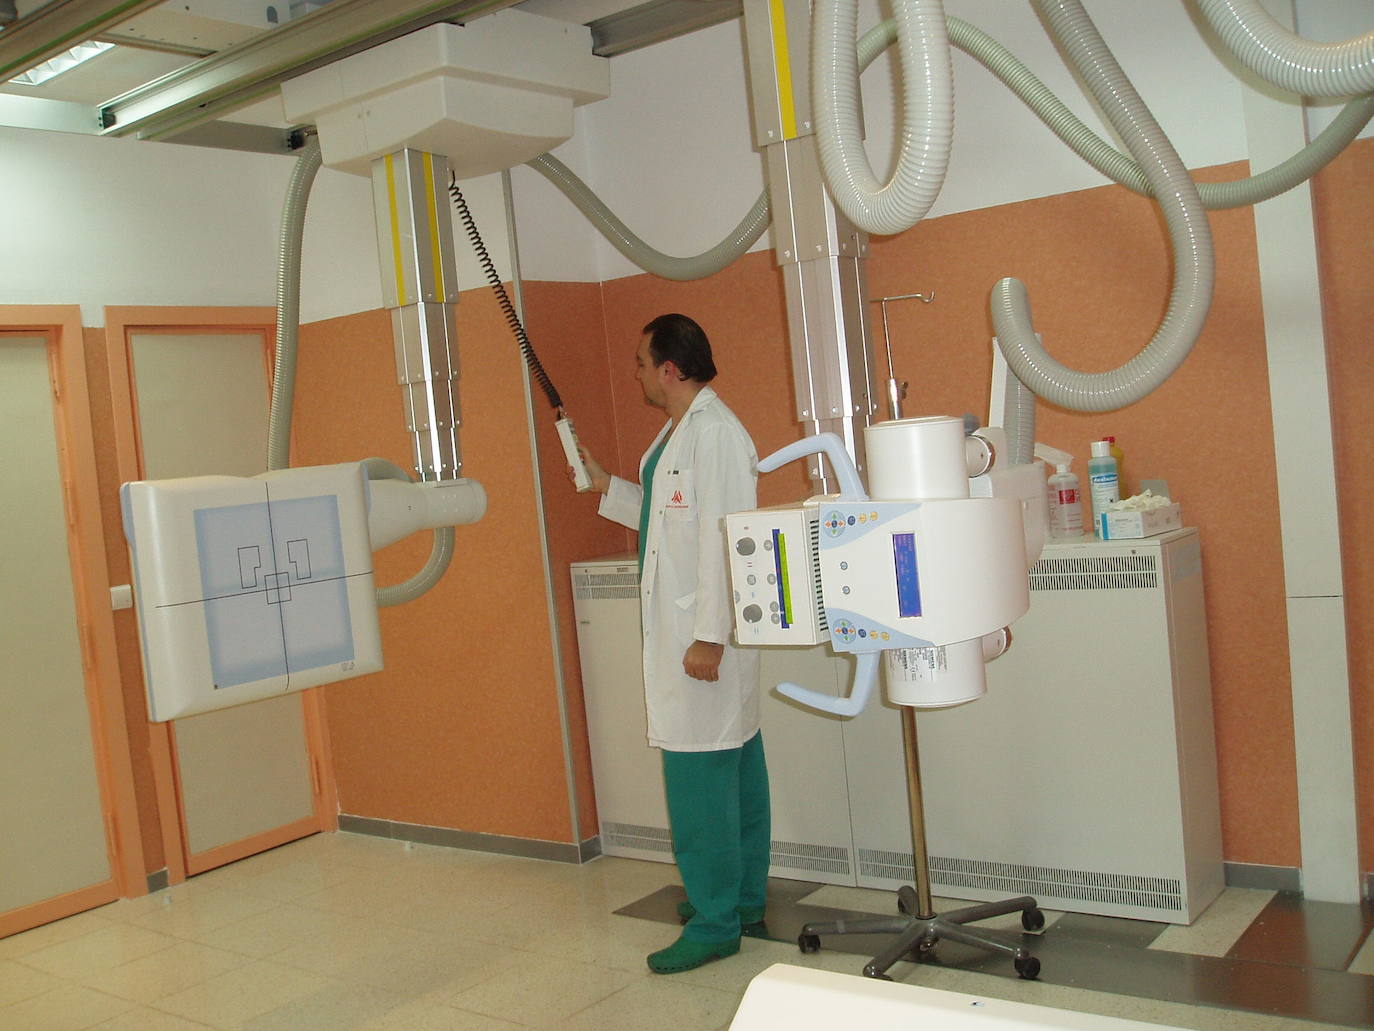 Imagen secundaria 1 - Arriba: Equipo de resonancia. Abajo izquierda: Equipo de radiografía. Abajo derecha: Un médico le realiza una ecografía a una embarazada.